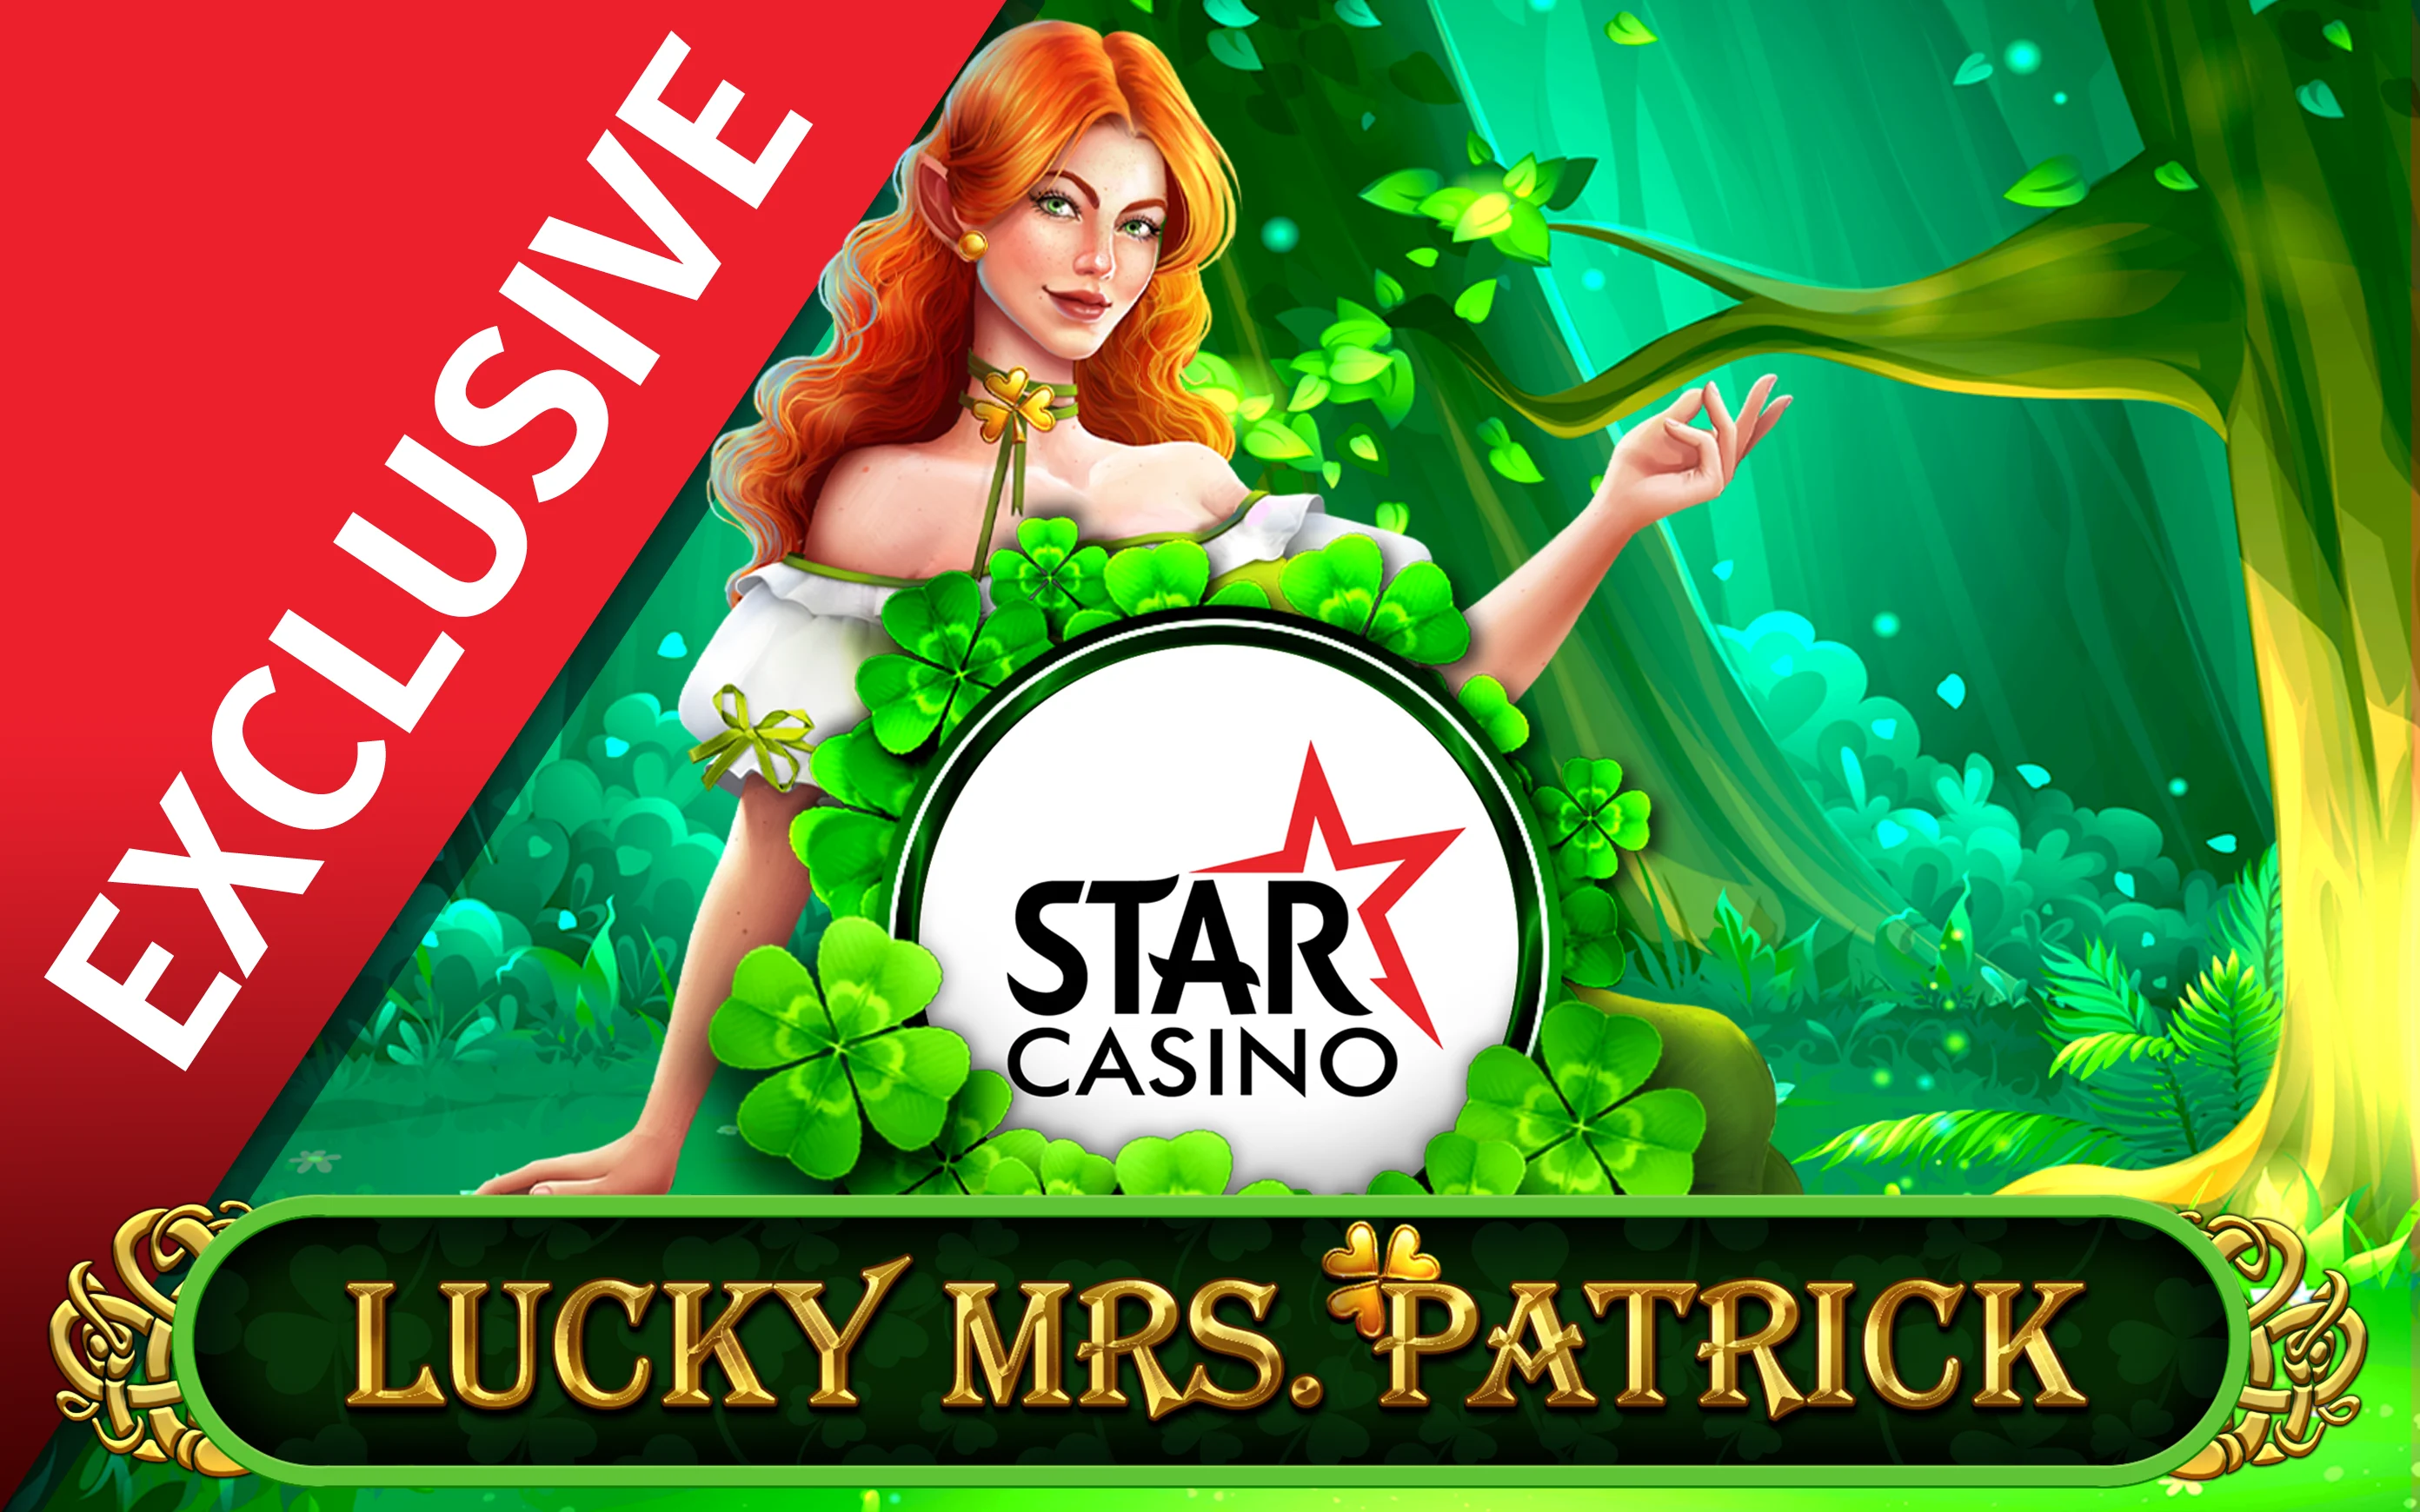 Chơi Starcasino Lucky Mrs Patrick trên sòng bạc trực tuyến Starcasino.be